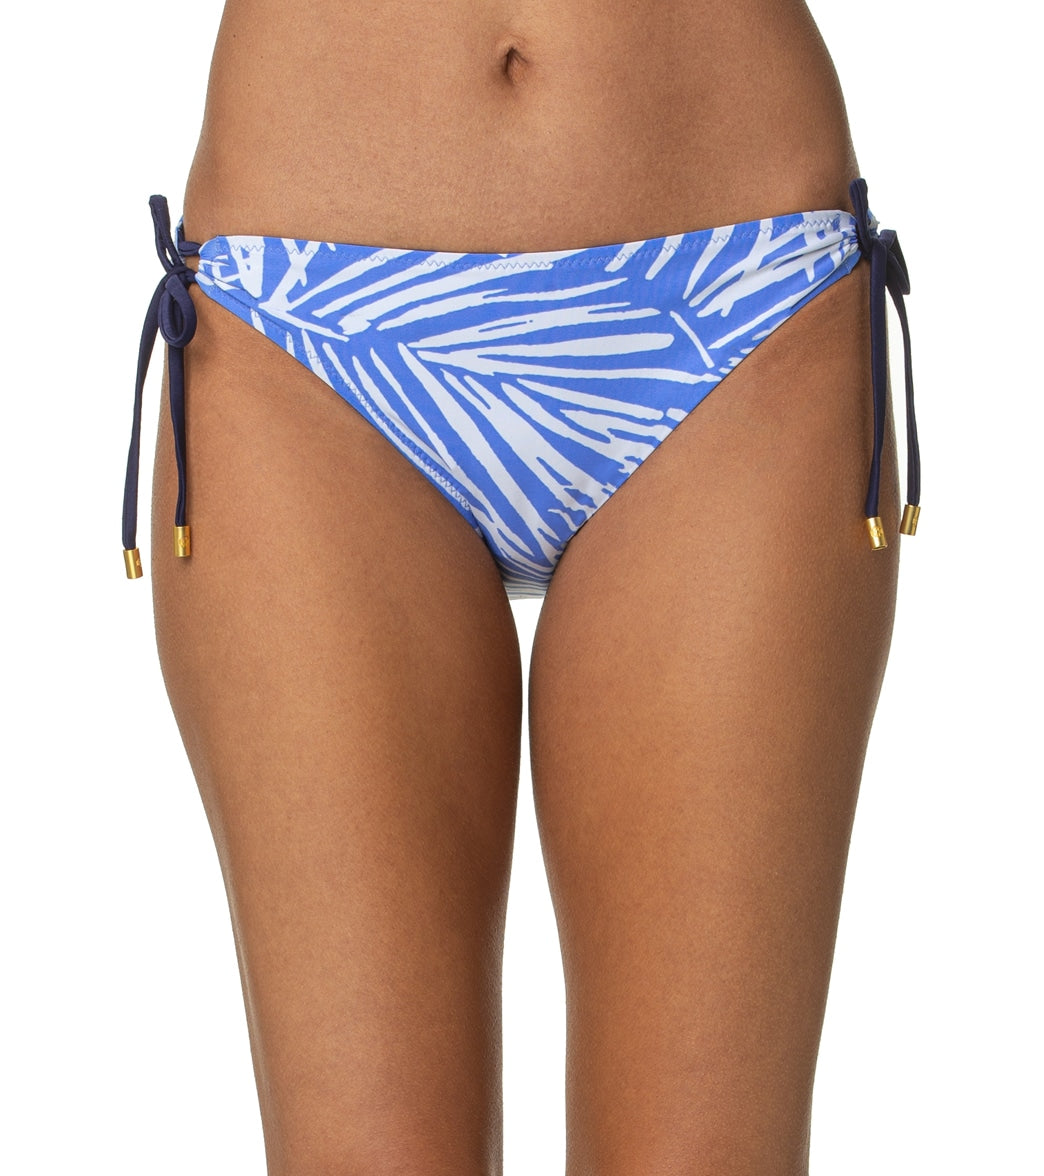 Helen Jon Womens South Seas Reversible Tunnel Tie Side Bikini Bottom